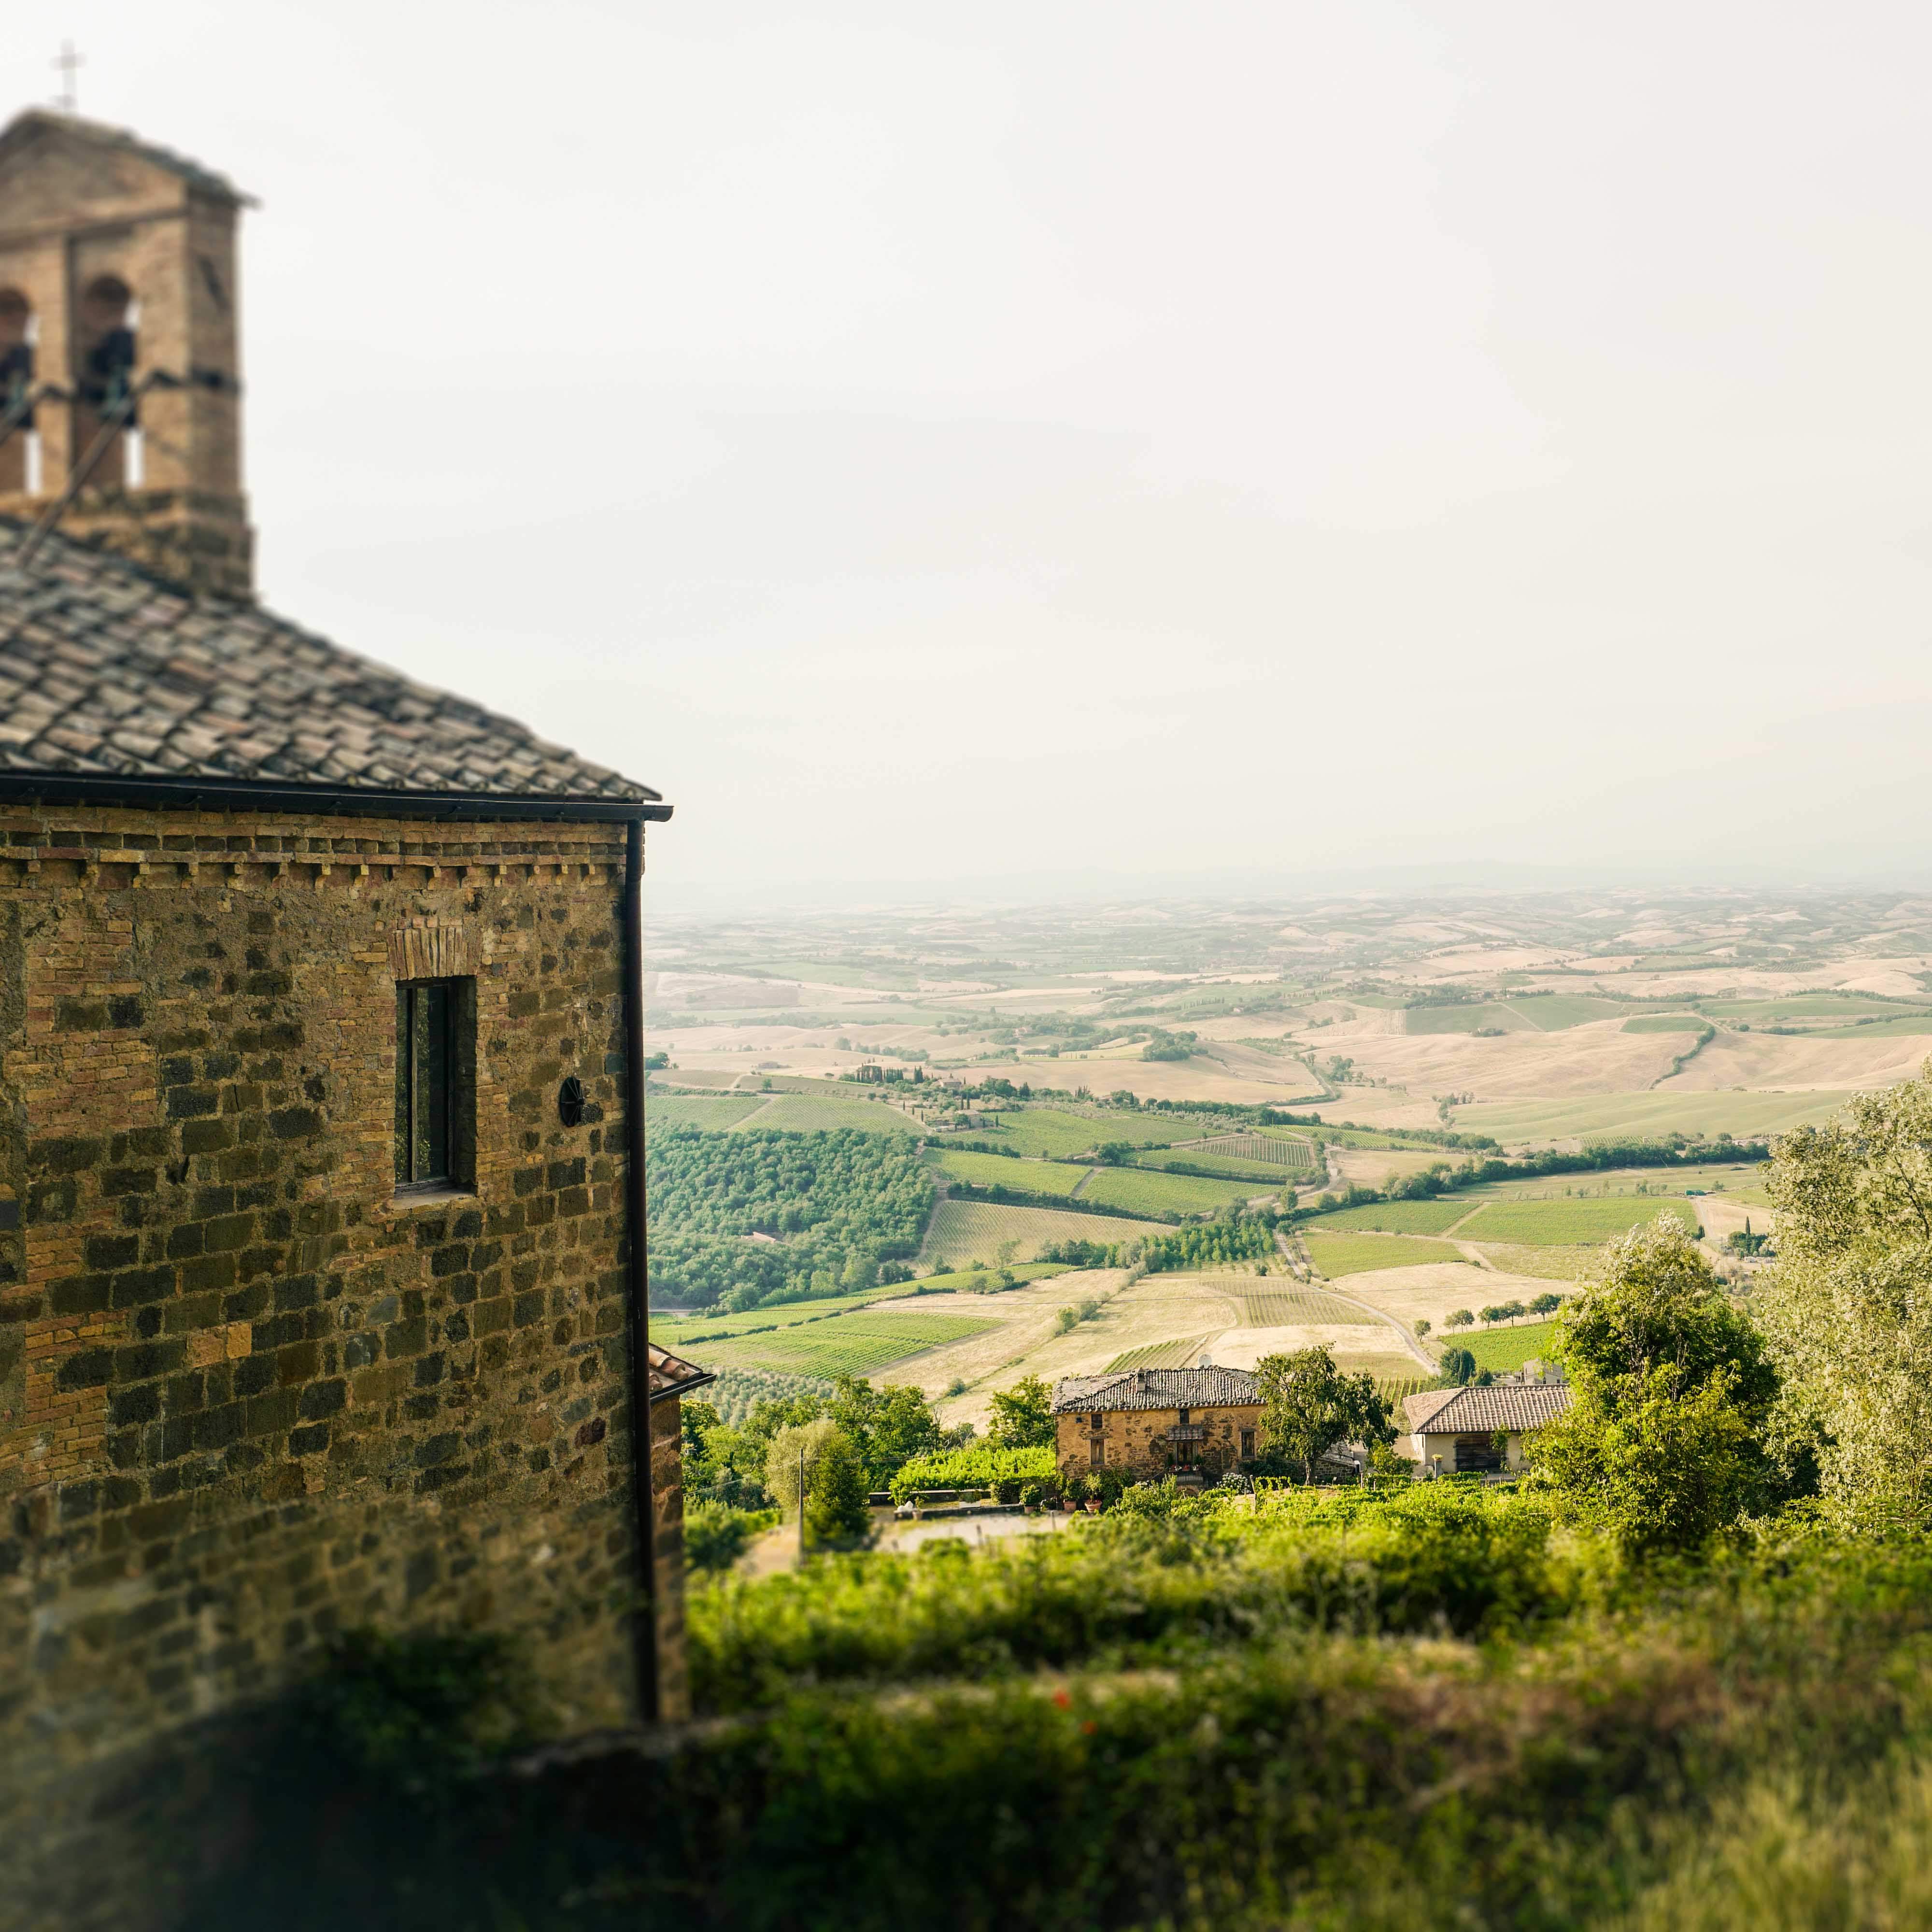 Das Bild zeigt eine malerische Aussicht auf die Landschaft der Toskana. Im Vordergrund ist ein Teil eines alten, steinernen Gebäudes mit einem sichtbaren Fenster und Dach zu sehen. Die Landschaft ist geprägt von sanften Hügeln, grünen Feldern und Waldstücken, die über das Land verstreut sind und auf ländliche Besiedlung hinweisen.